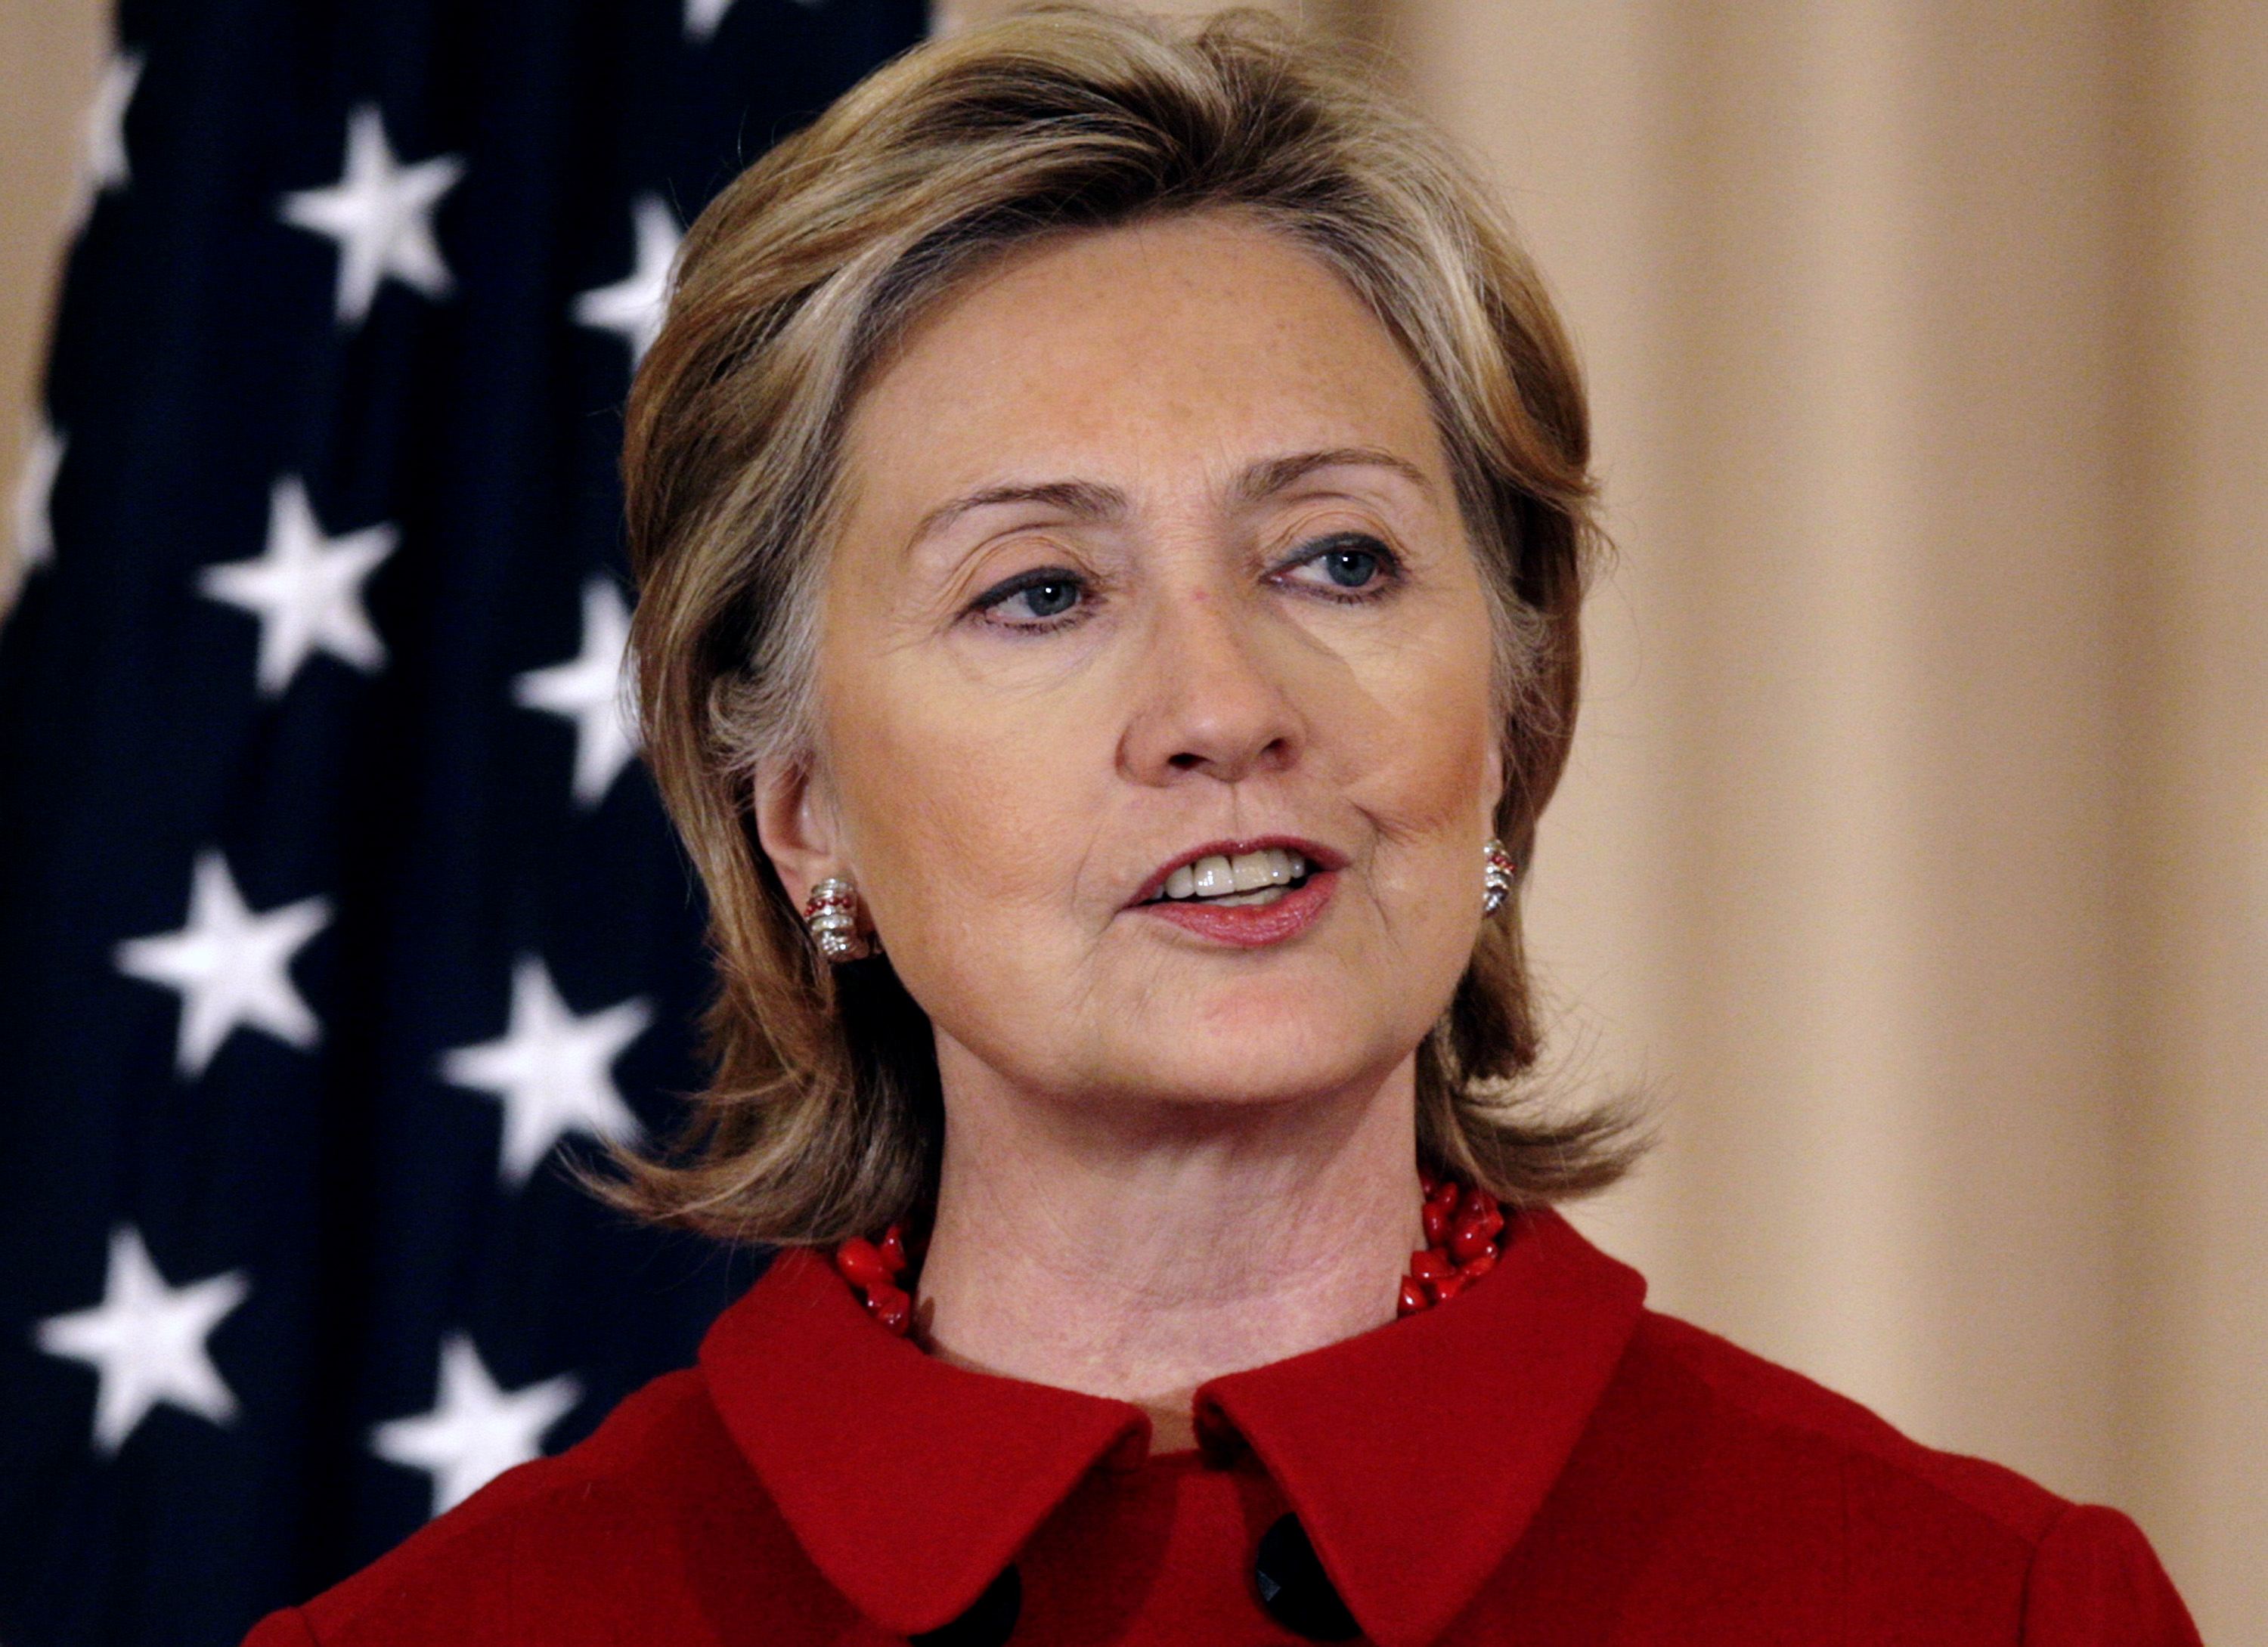 Hillary Clinton Announces 2016 US Presidential Bid